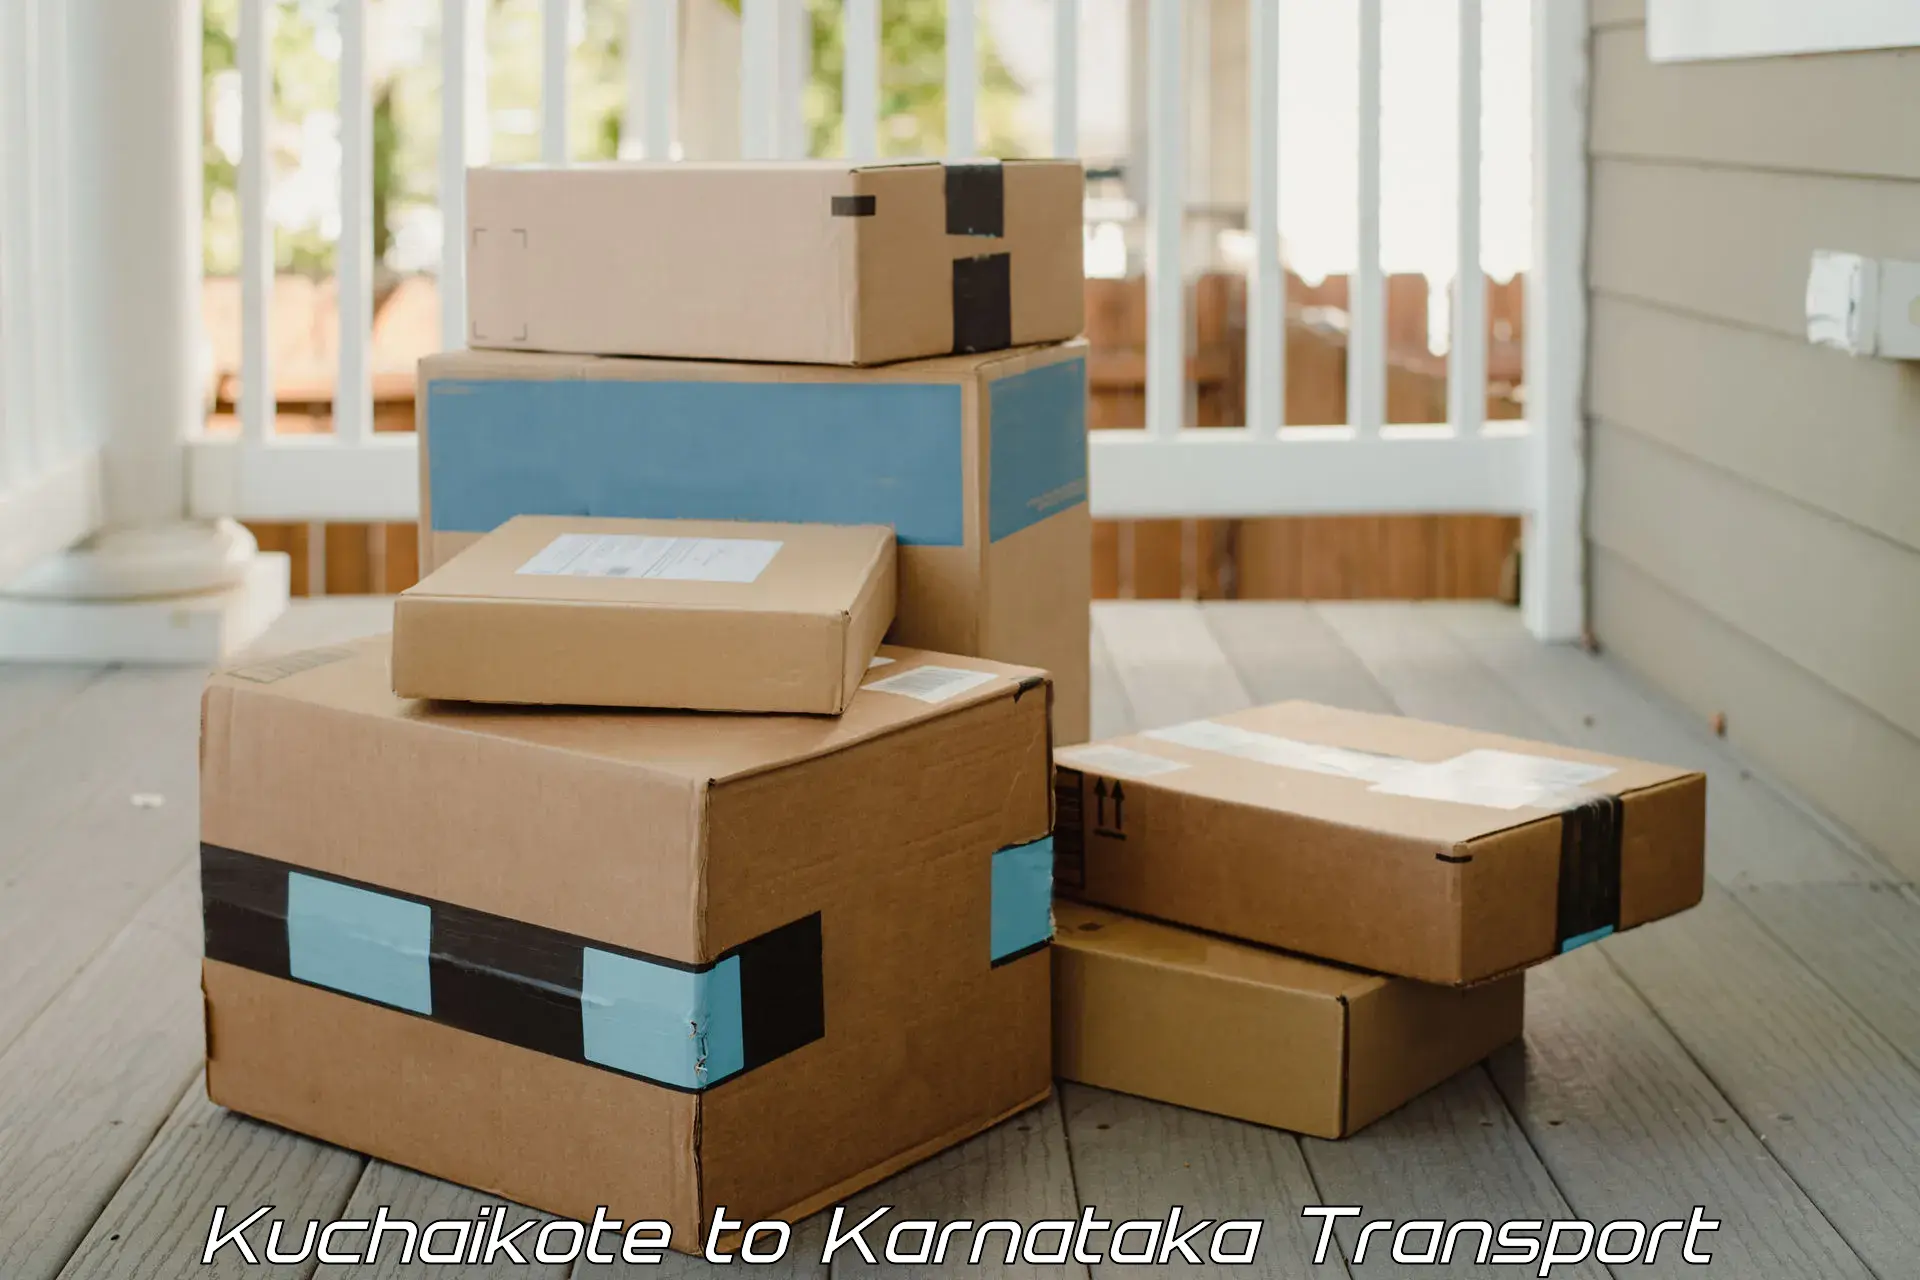 Interstate goods transport Kuchaikote to Karnataka